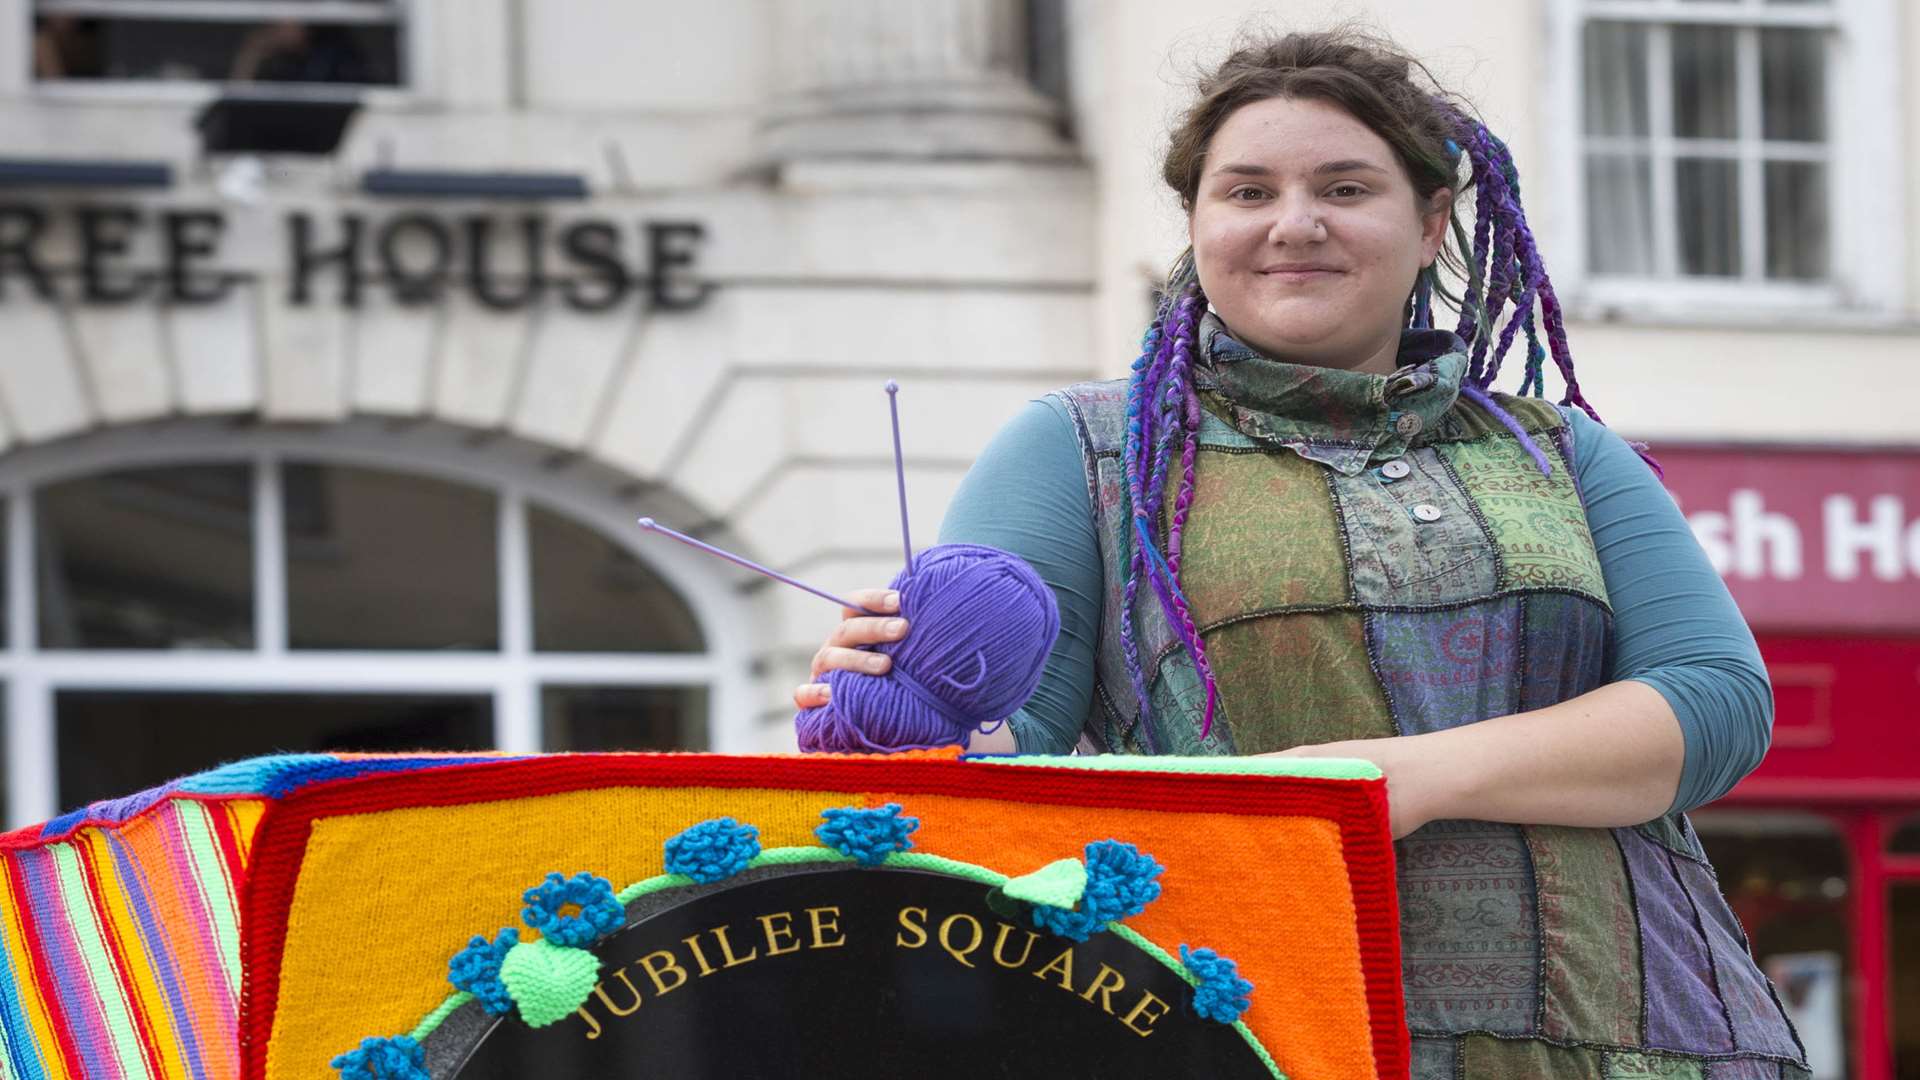 Zoe Sparkle in Jubilee Square